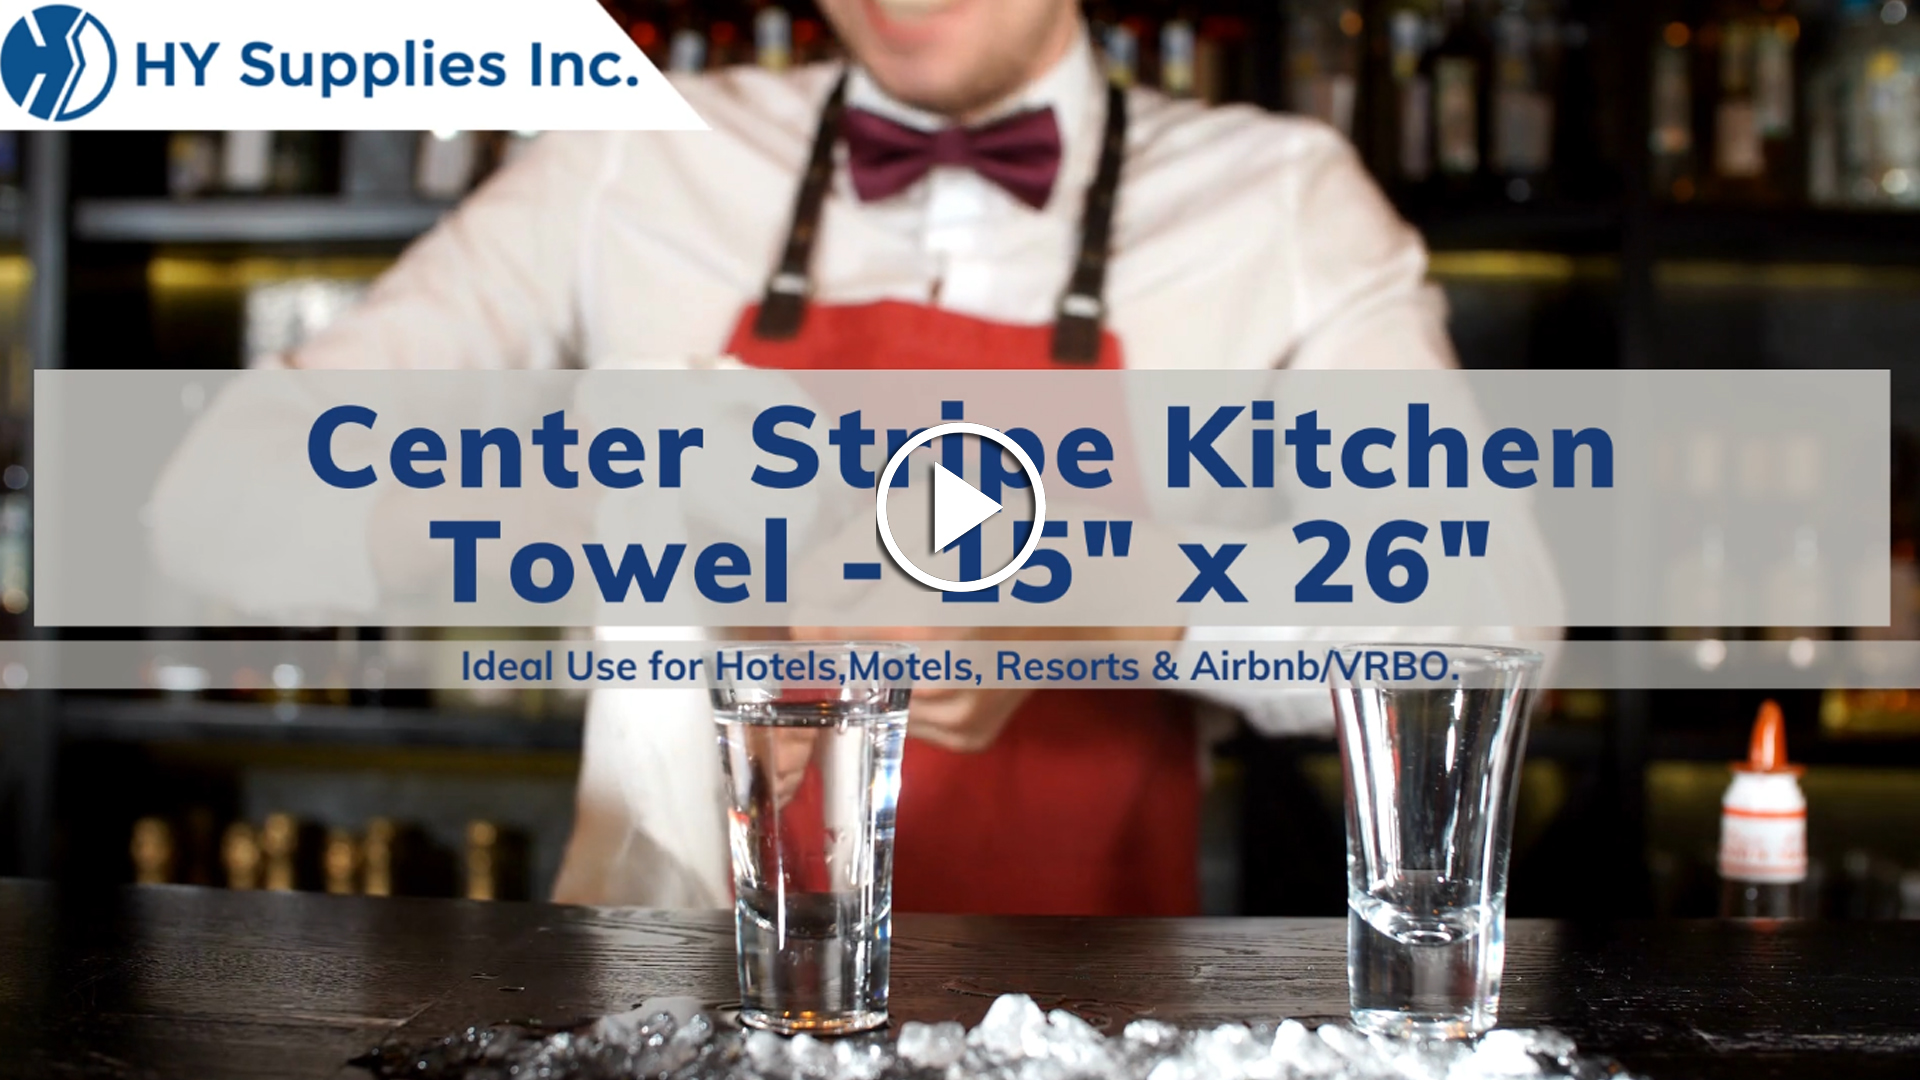 Center Stripe Kitchen Towel - 15" x 26"